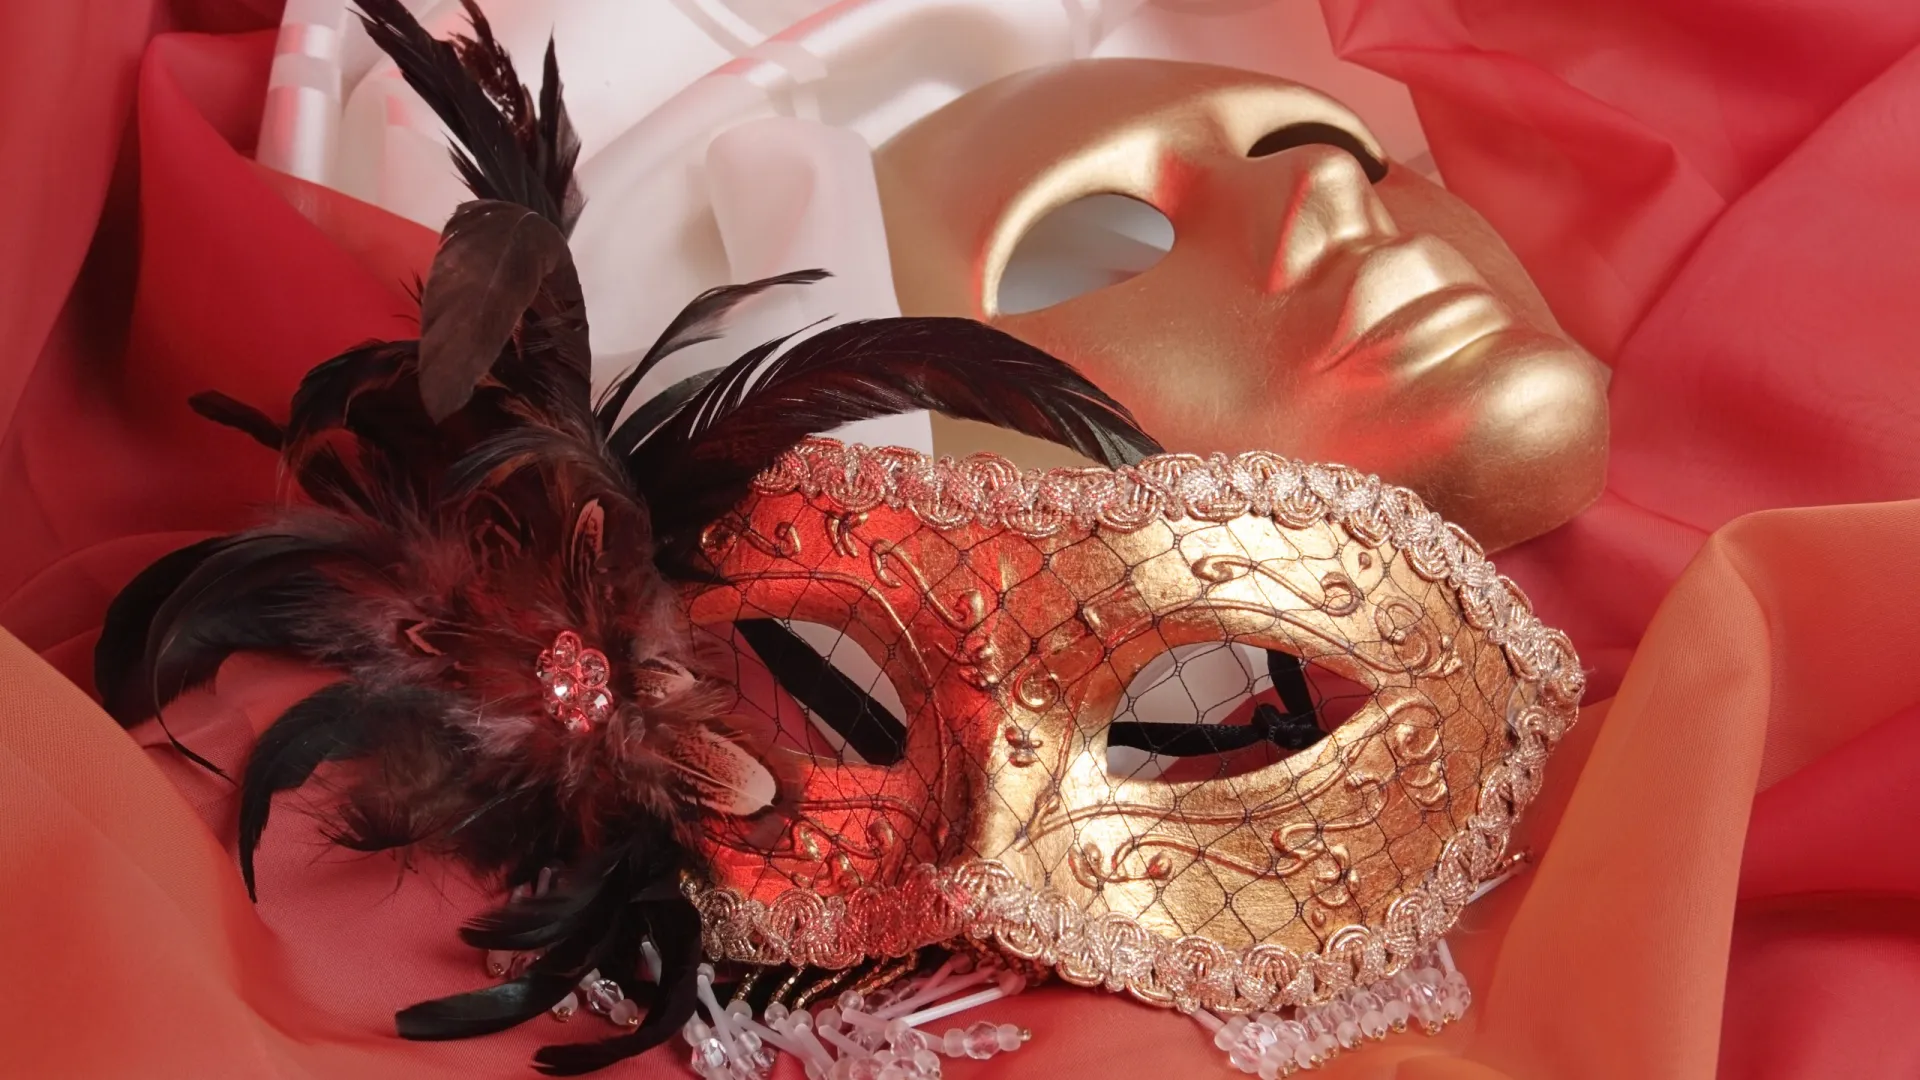 Полумаска коломбина и полнолицевая маска. Фото: Igor Normann / Shutterstock / Fotodom